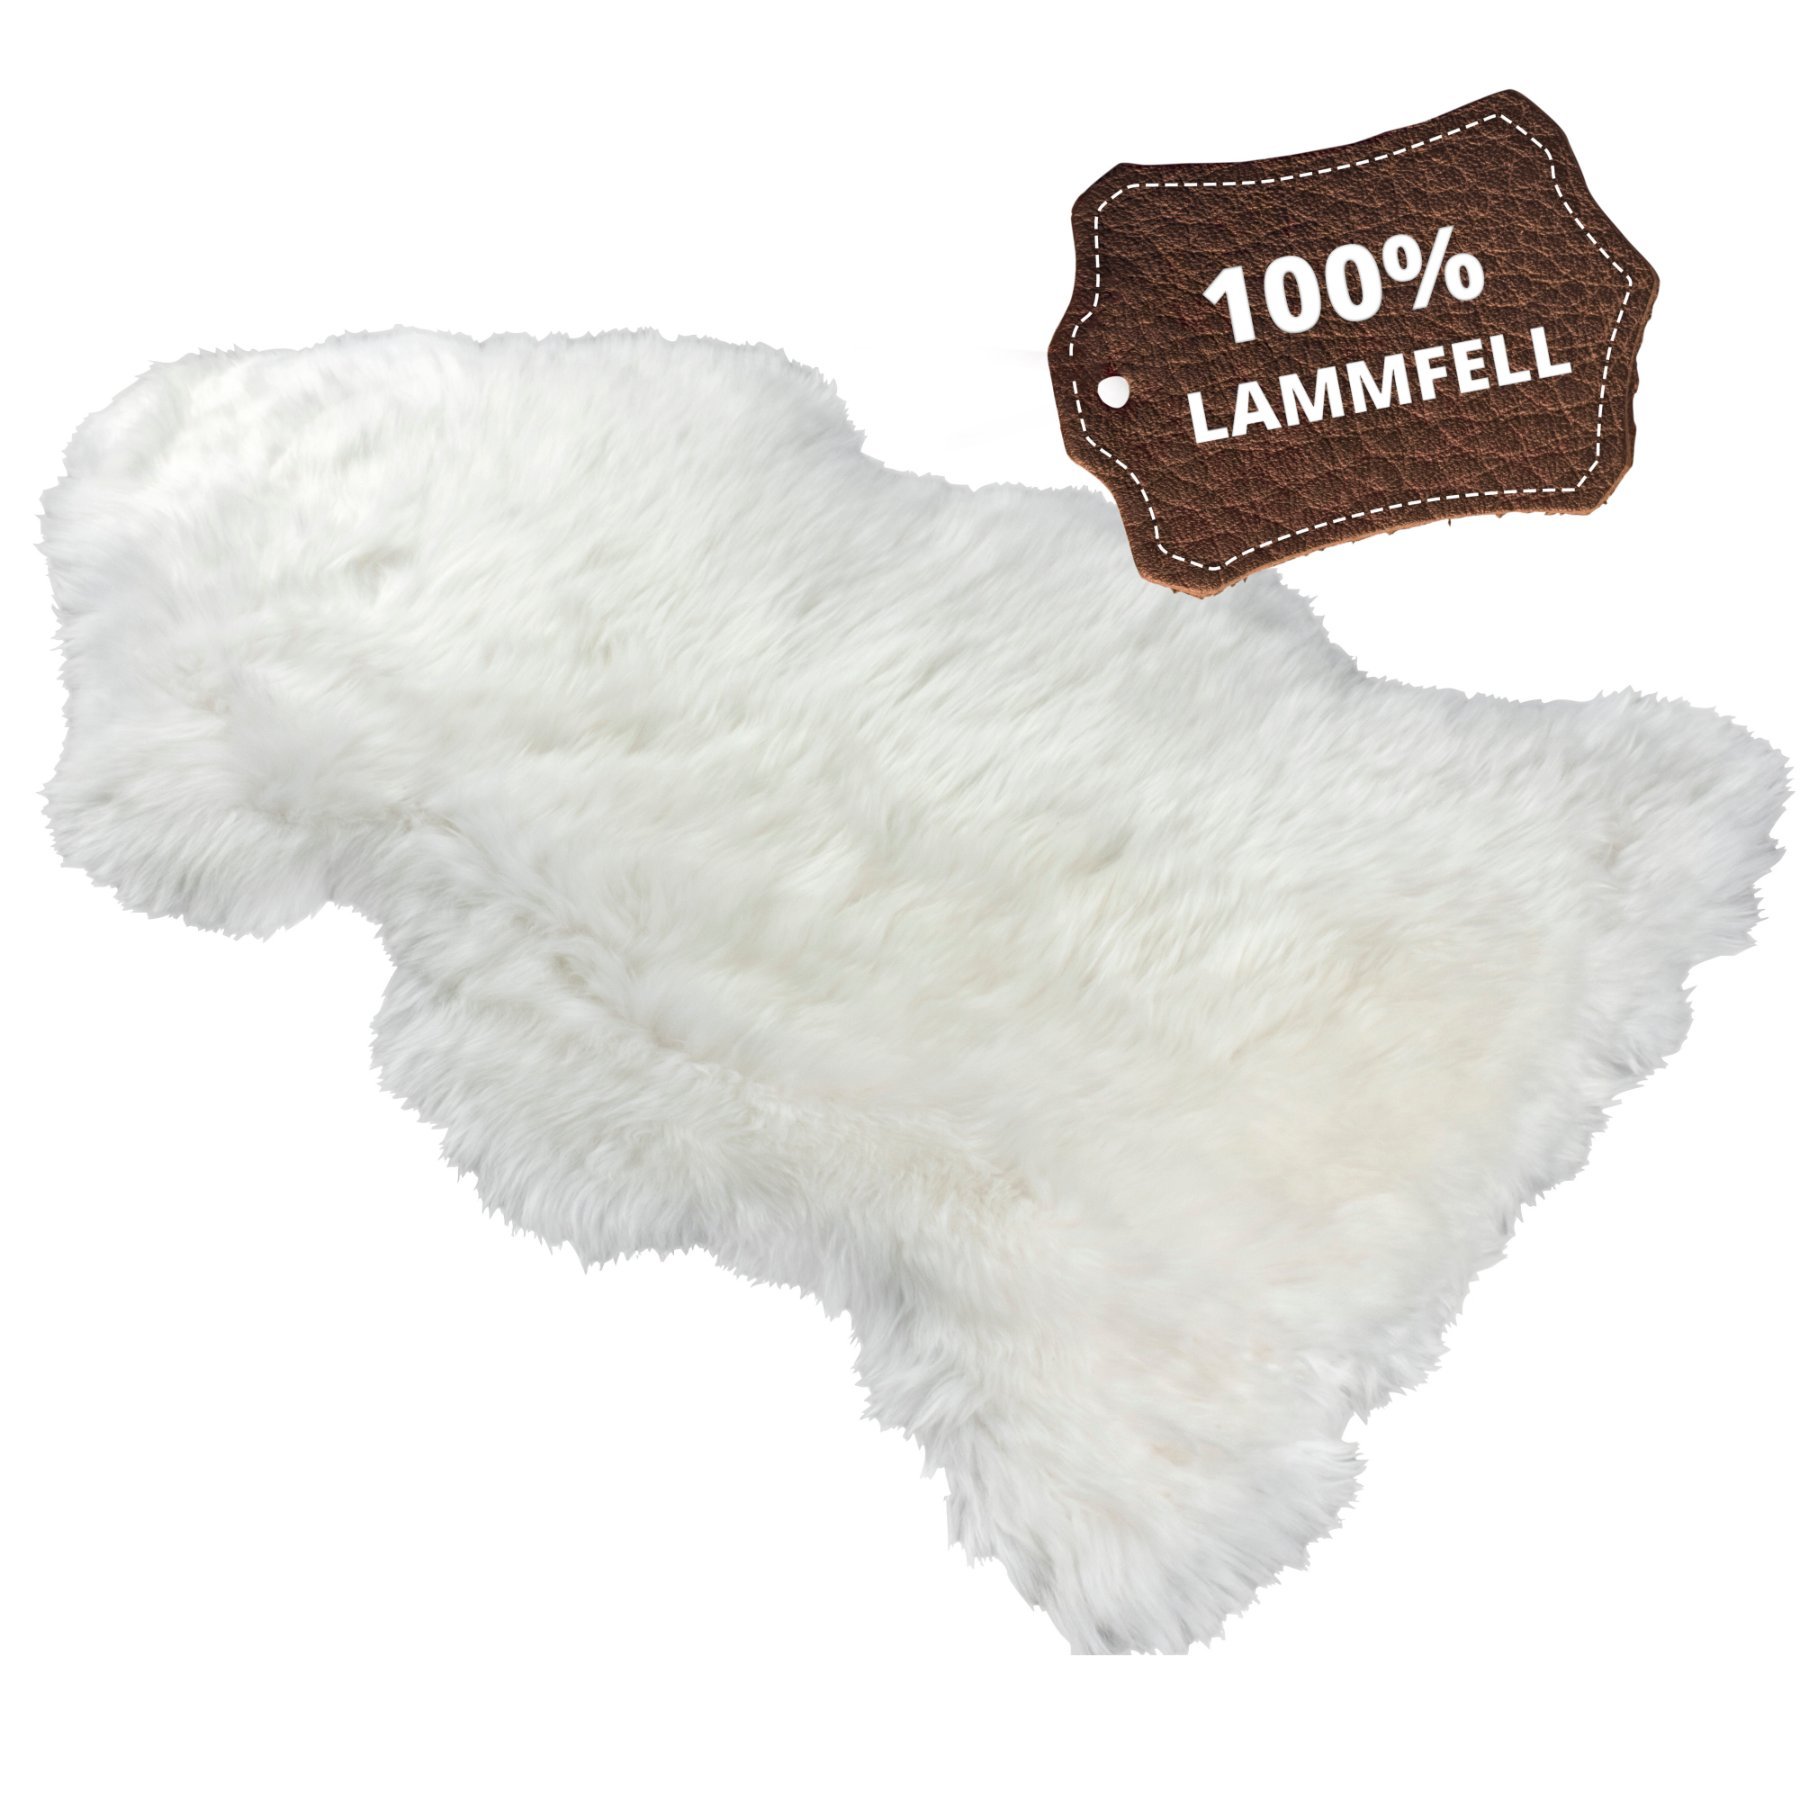 Lammfell Teppich Beal weiß 100-105cm aus 100% natürlichem Lammfell, Wollhöhe 50mm, ideal im Wohn- & Schlafzimmer